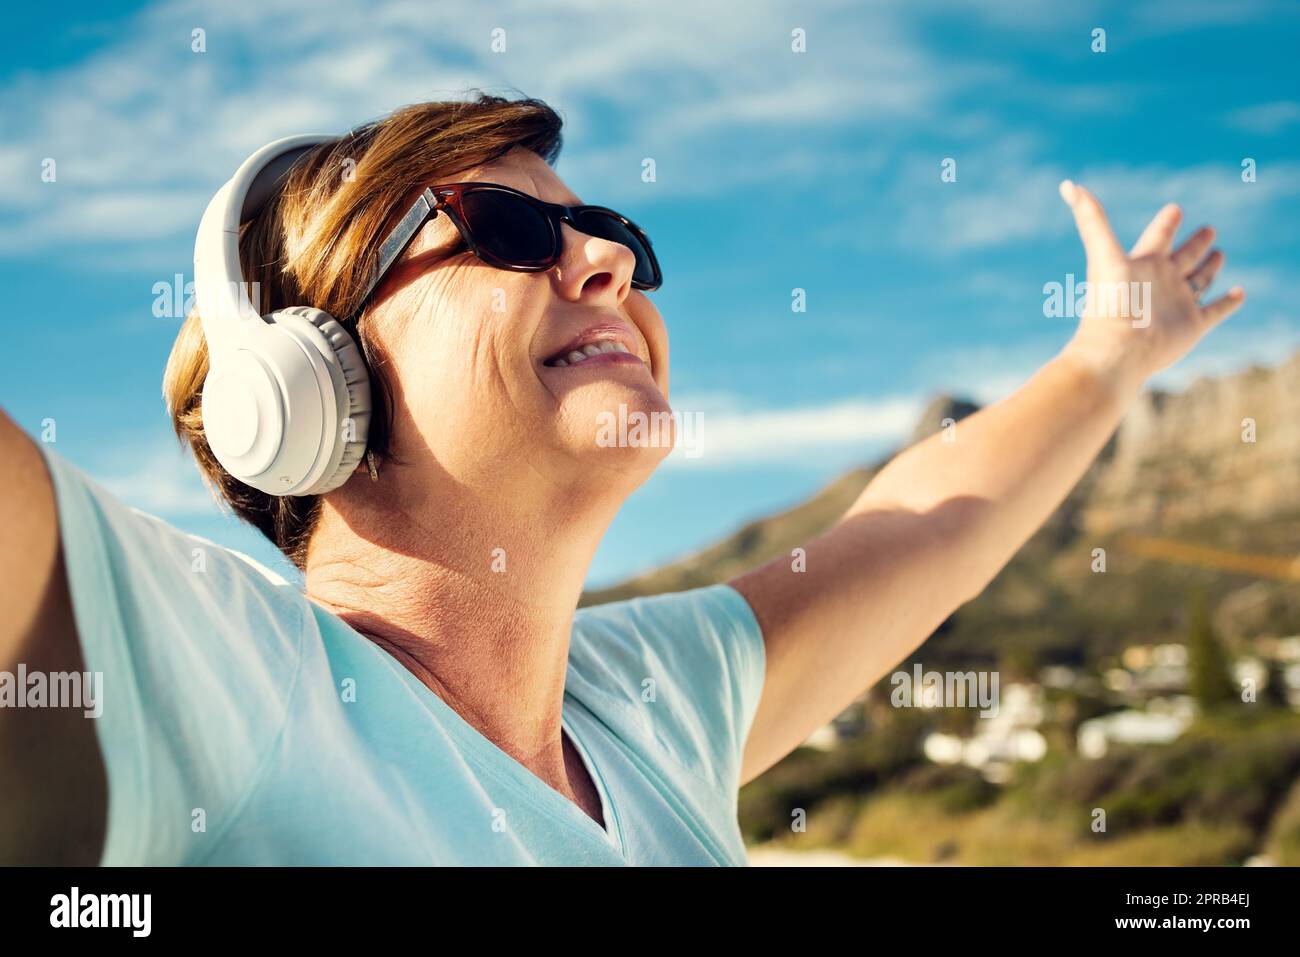 Musik ist wirklich die beste Stimmungsverbesserung. Eine Frau trägt Kopfhörer, während sie im Freien steht. Stockfoto